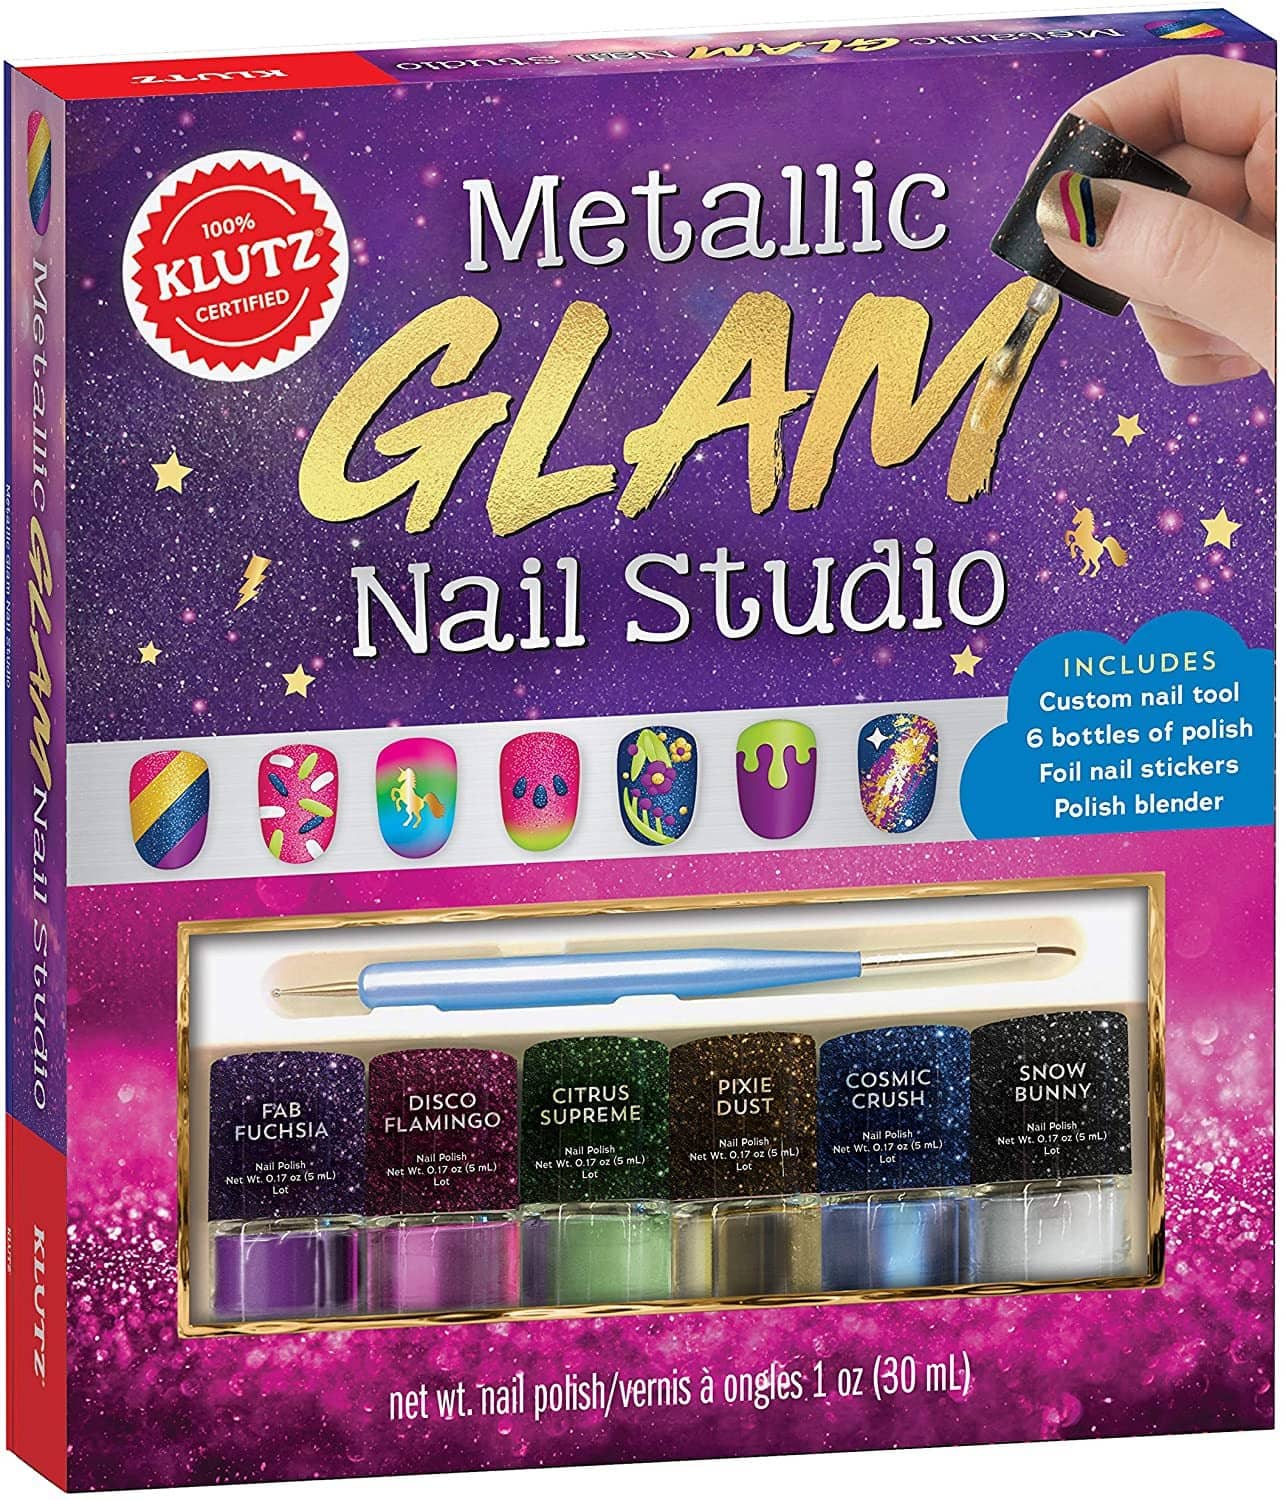 Metallic Glam Nail Studio-Kidding Around NYC